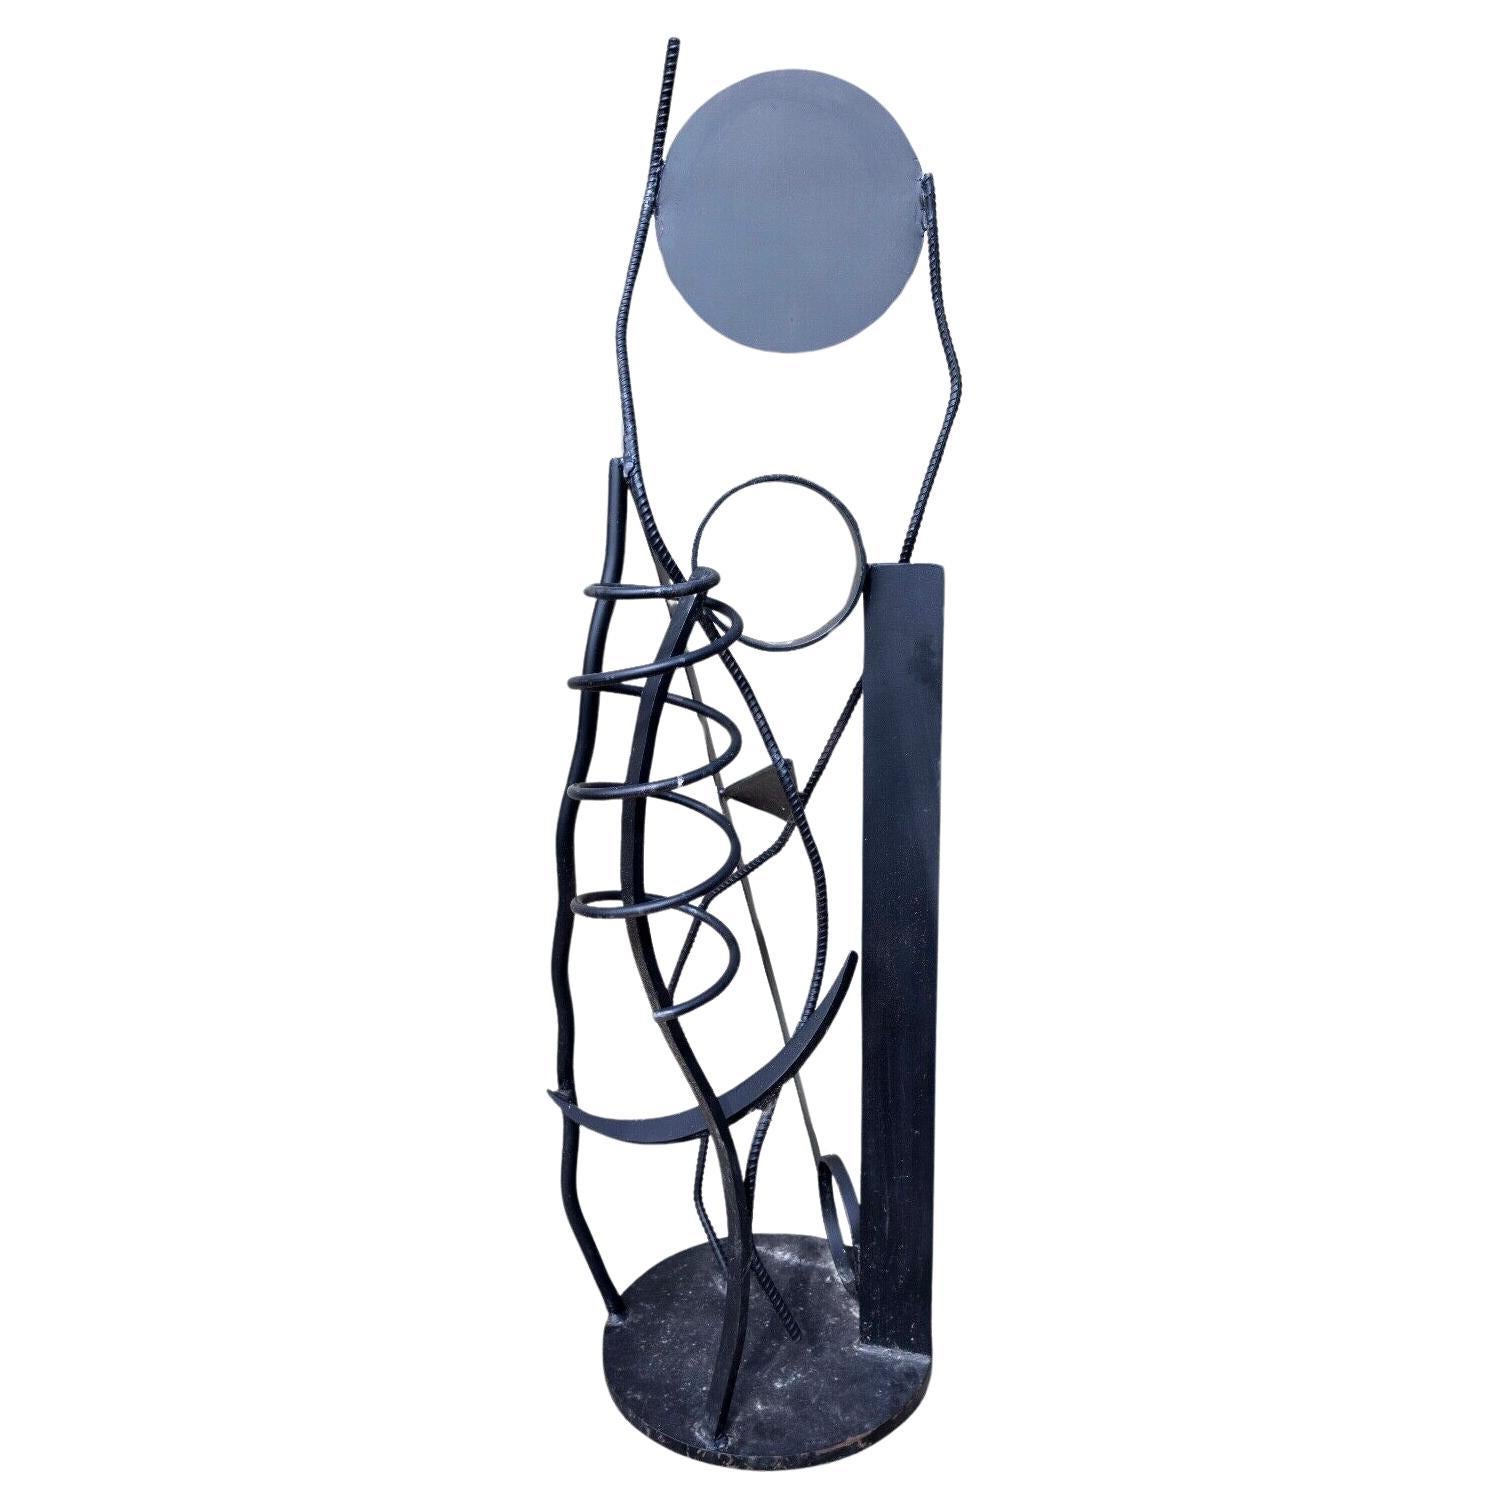 Robert D. Hansen Black Forged Metal Coil Abstract Contemporary Modern Sculpture (Sculpture moderne contemporaine en métal forgé noir)